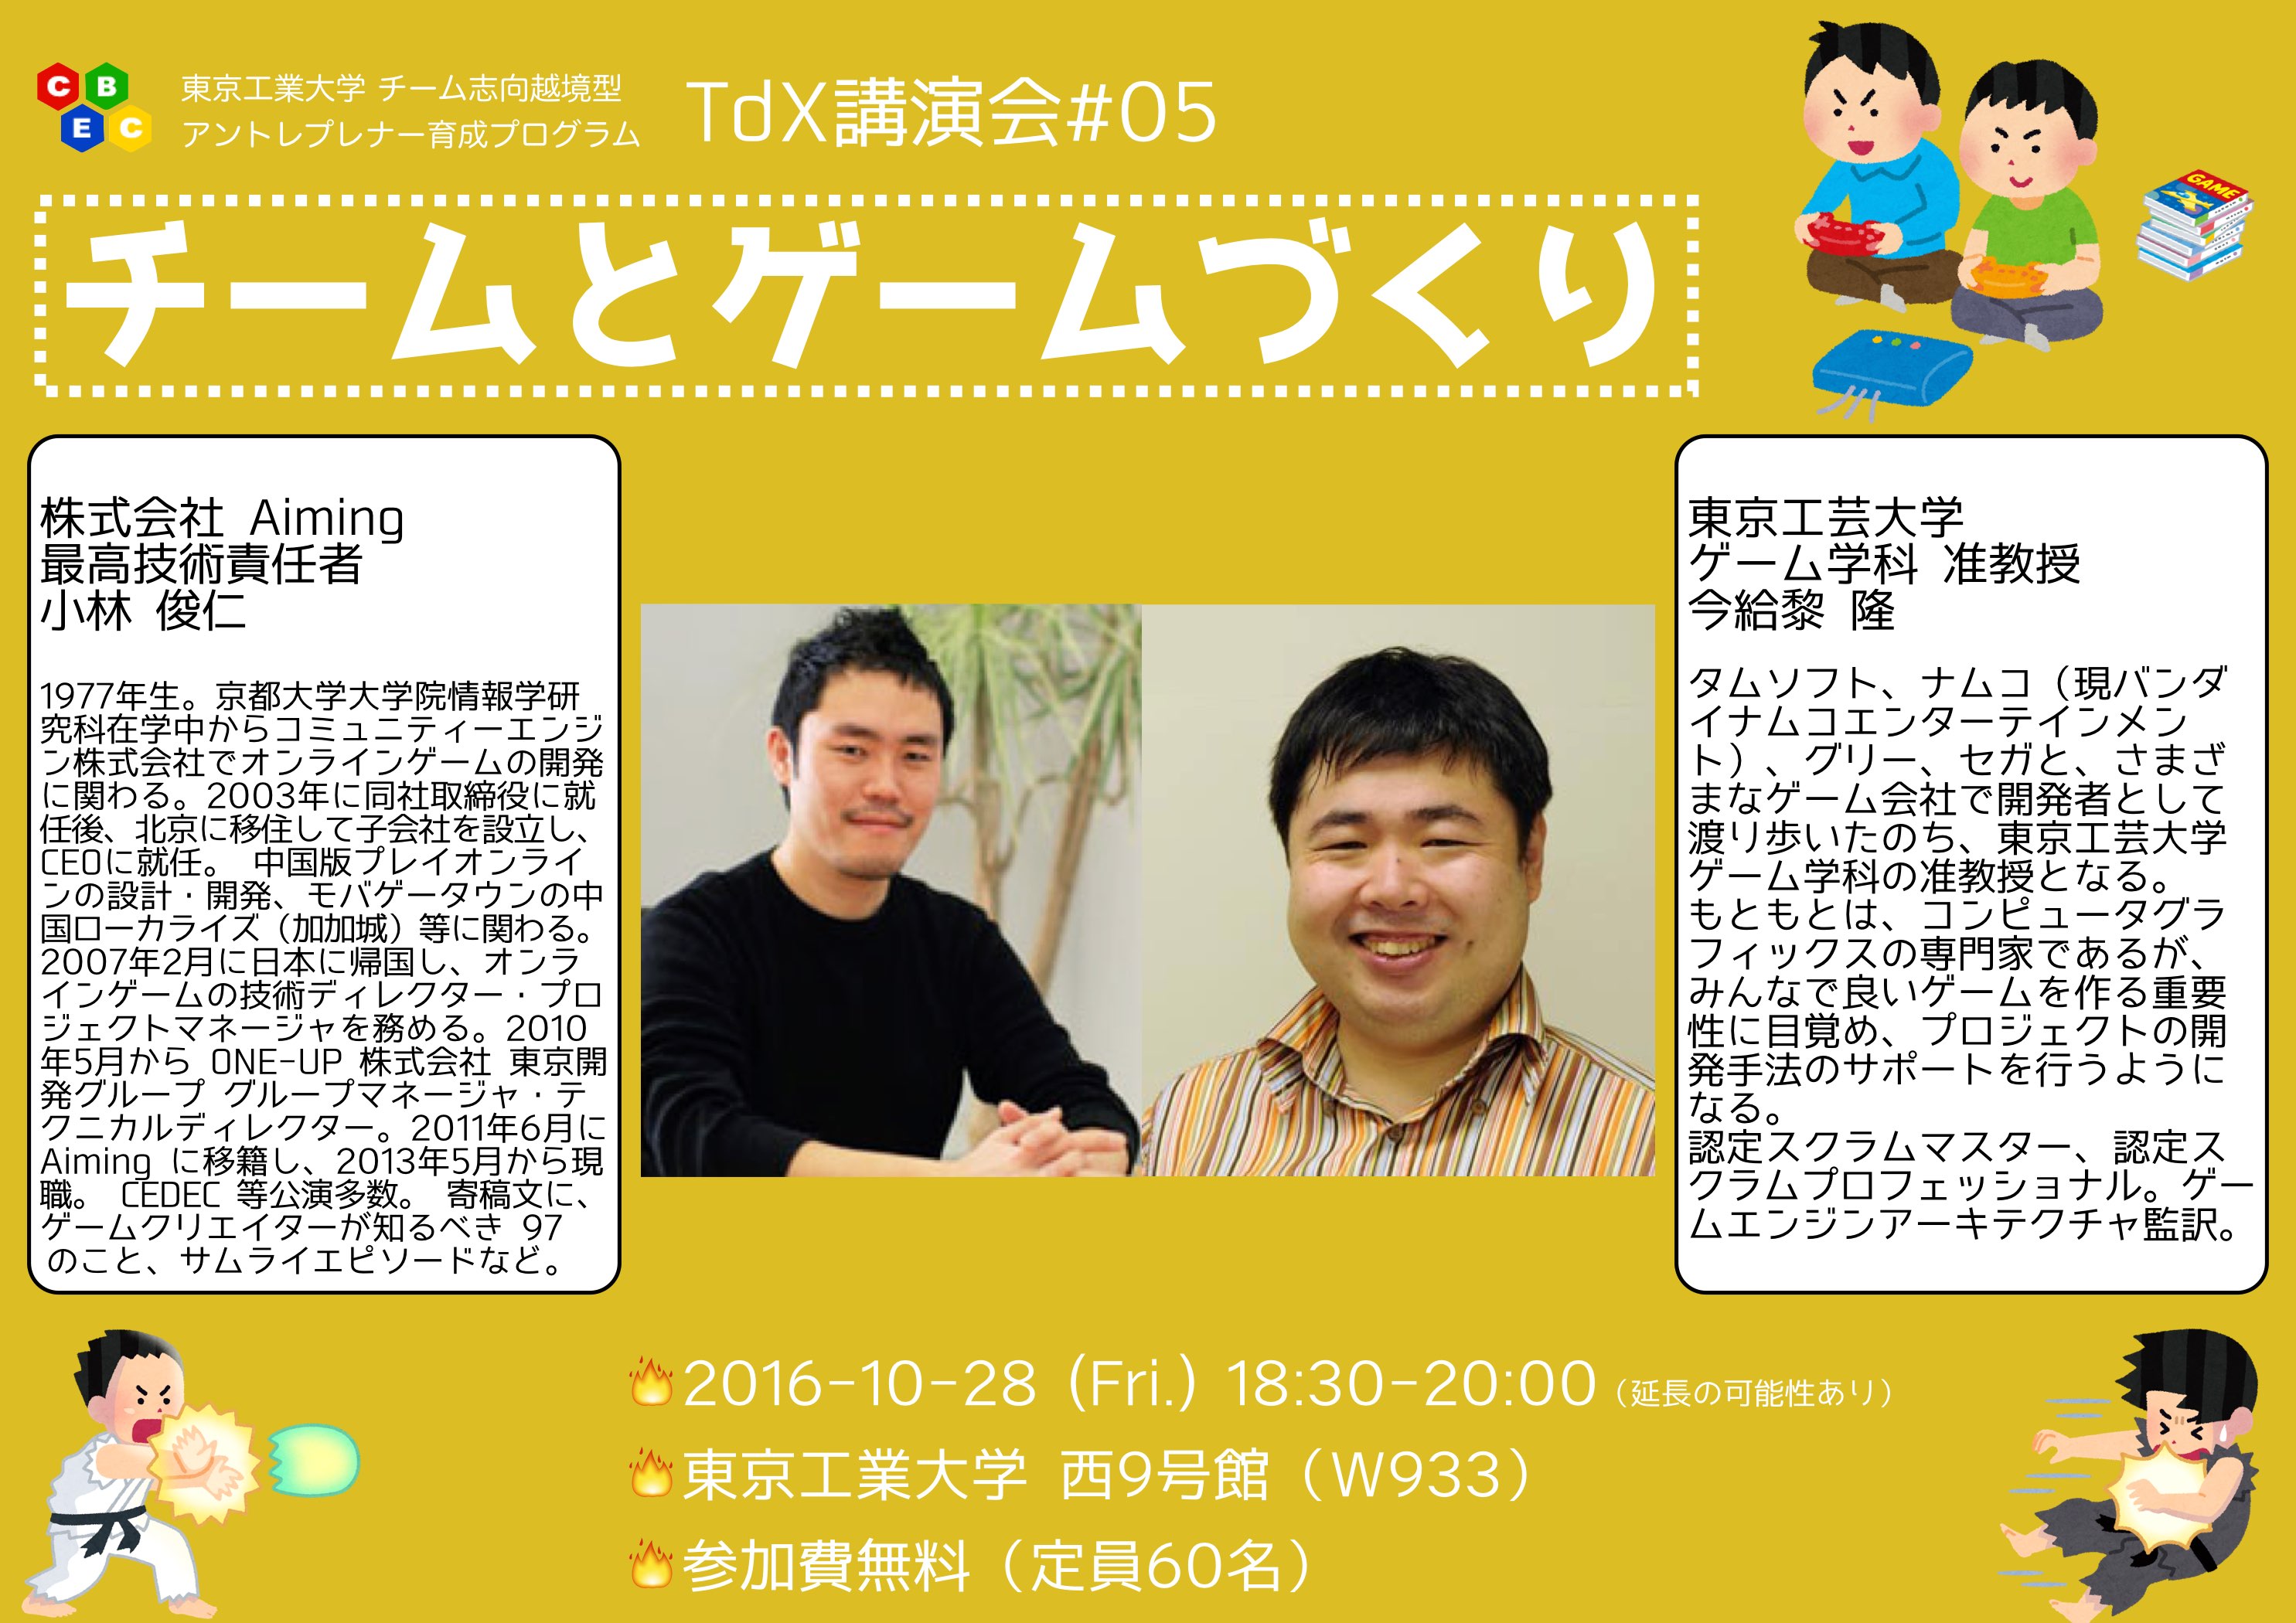 Tdx講演会 05 チームとゲームづくり イベントカレンダー 東京工業大学